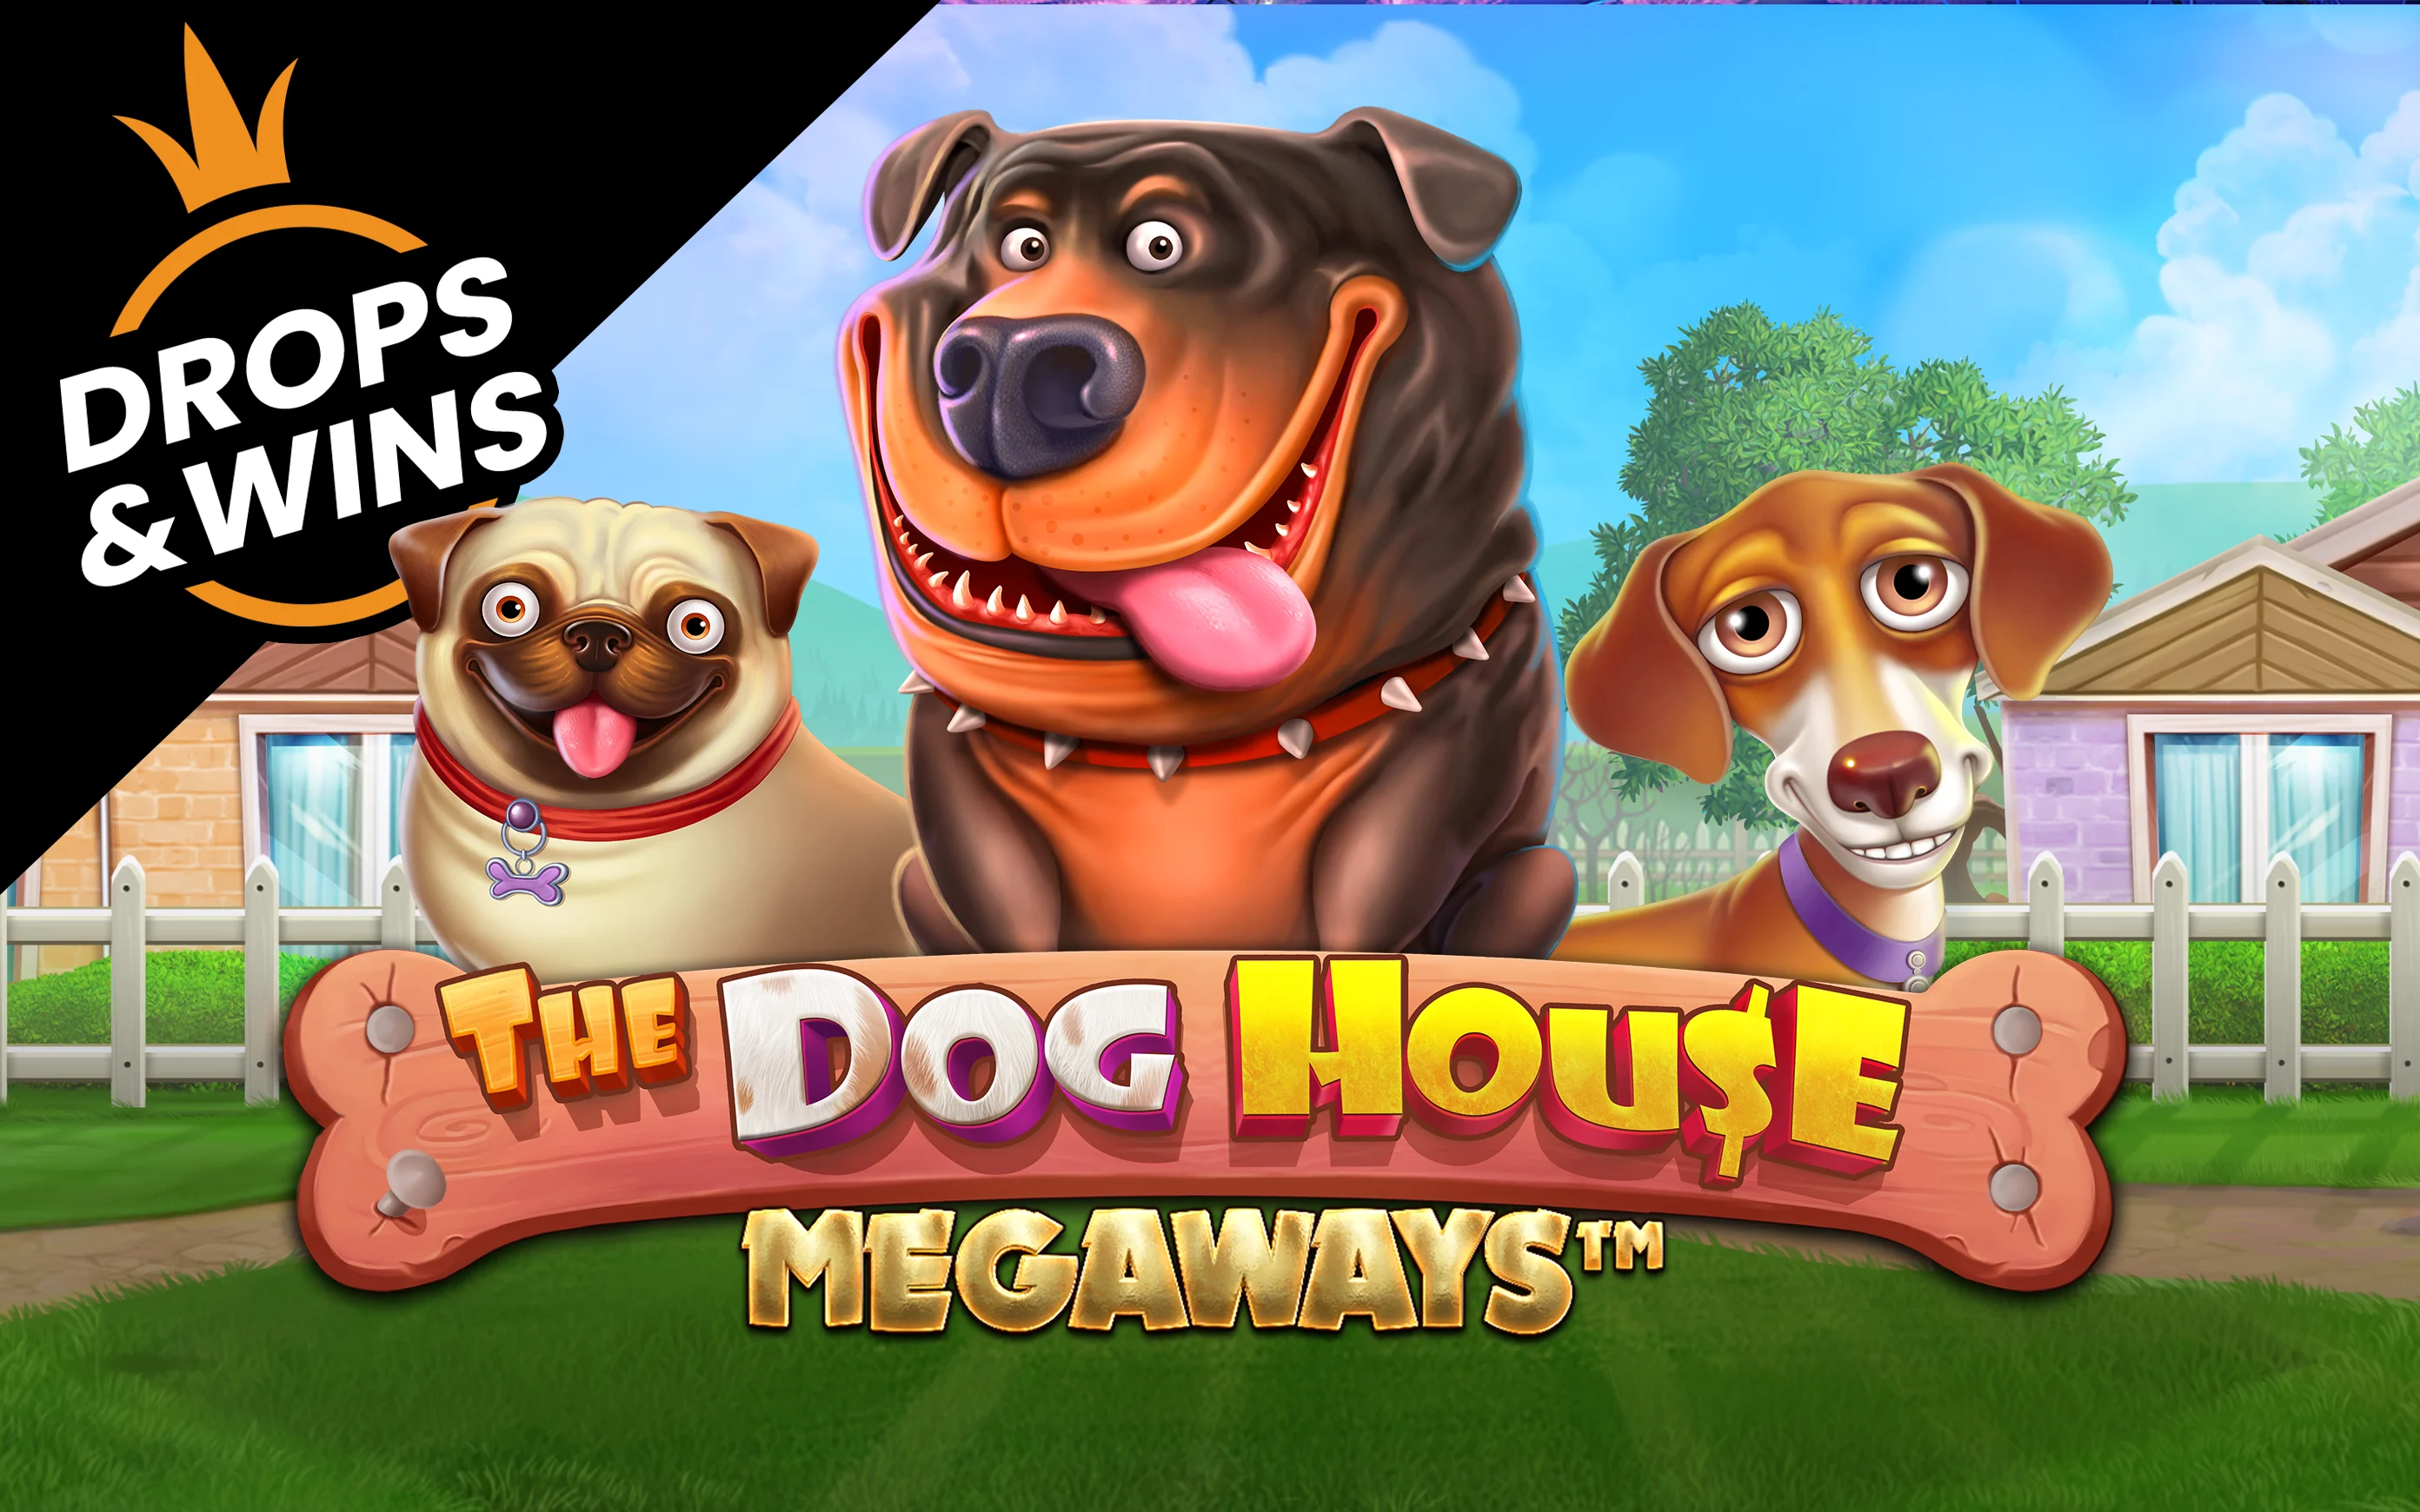 Zagraj w The Dog House Megaways™ w kasynie online Starcasino.be